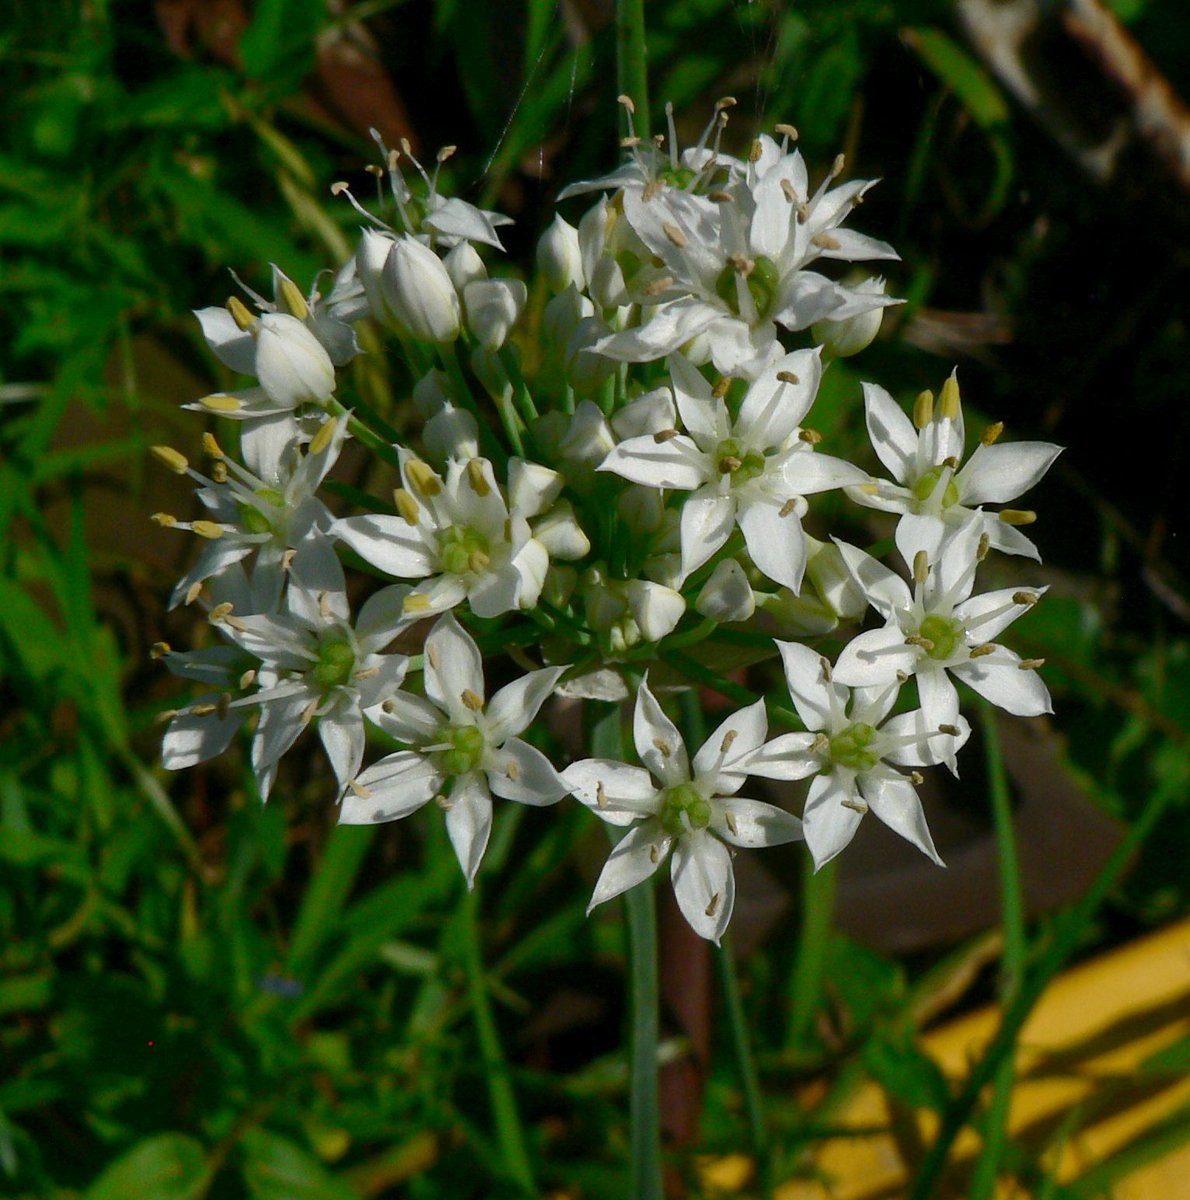 こころんグリーン ニラの花が目いっぱい開いています 今 一番きれいな状態だと思います 小さな白い花が ギュッと集まって開いています ニラ 白い花 夏の花 夏 山野草 野草 園芸 ガーデニング 熊本市南区 熊本 T Co Eulawag31y